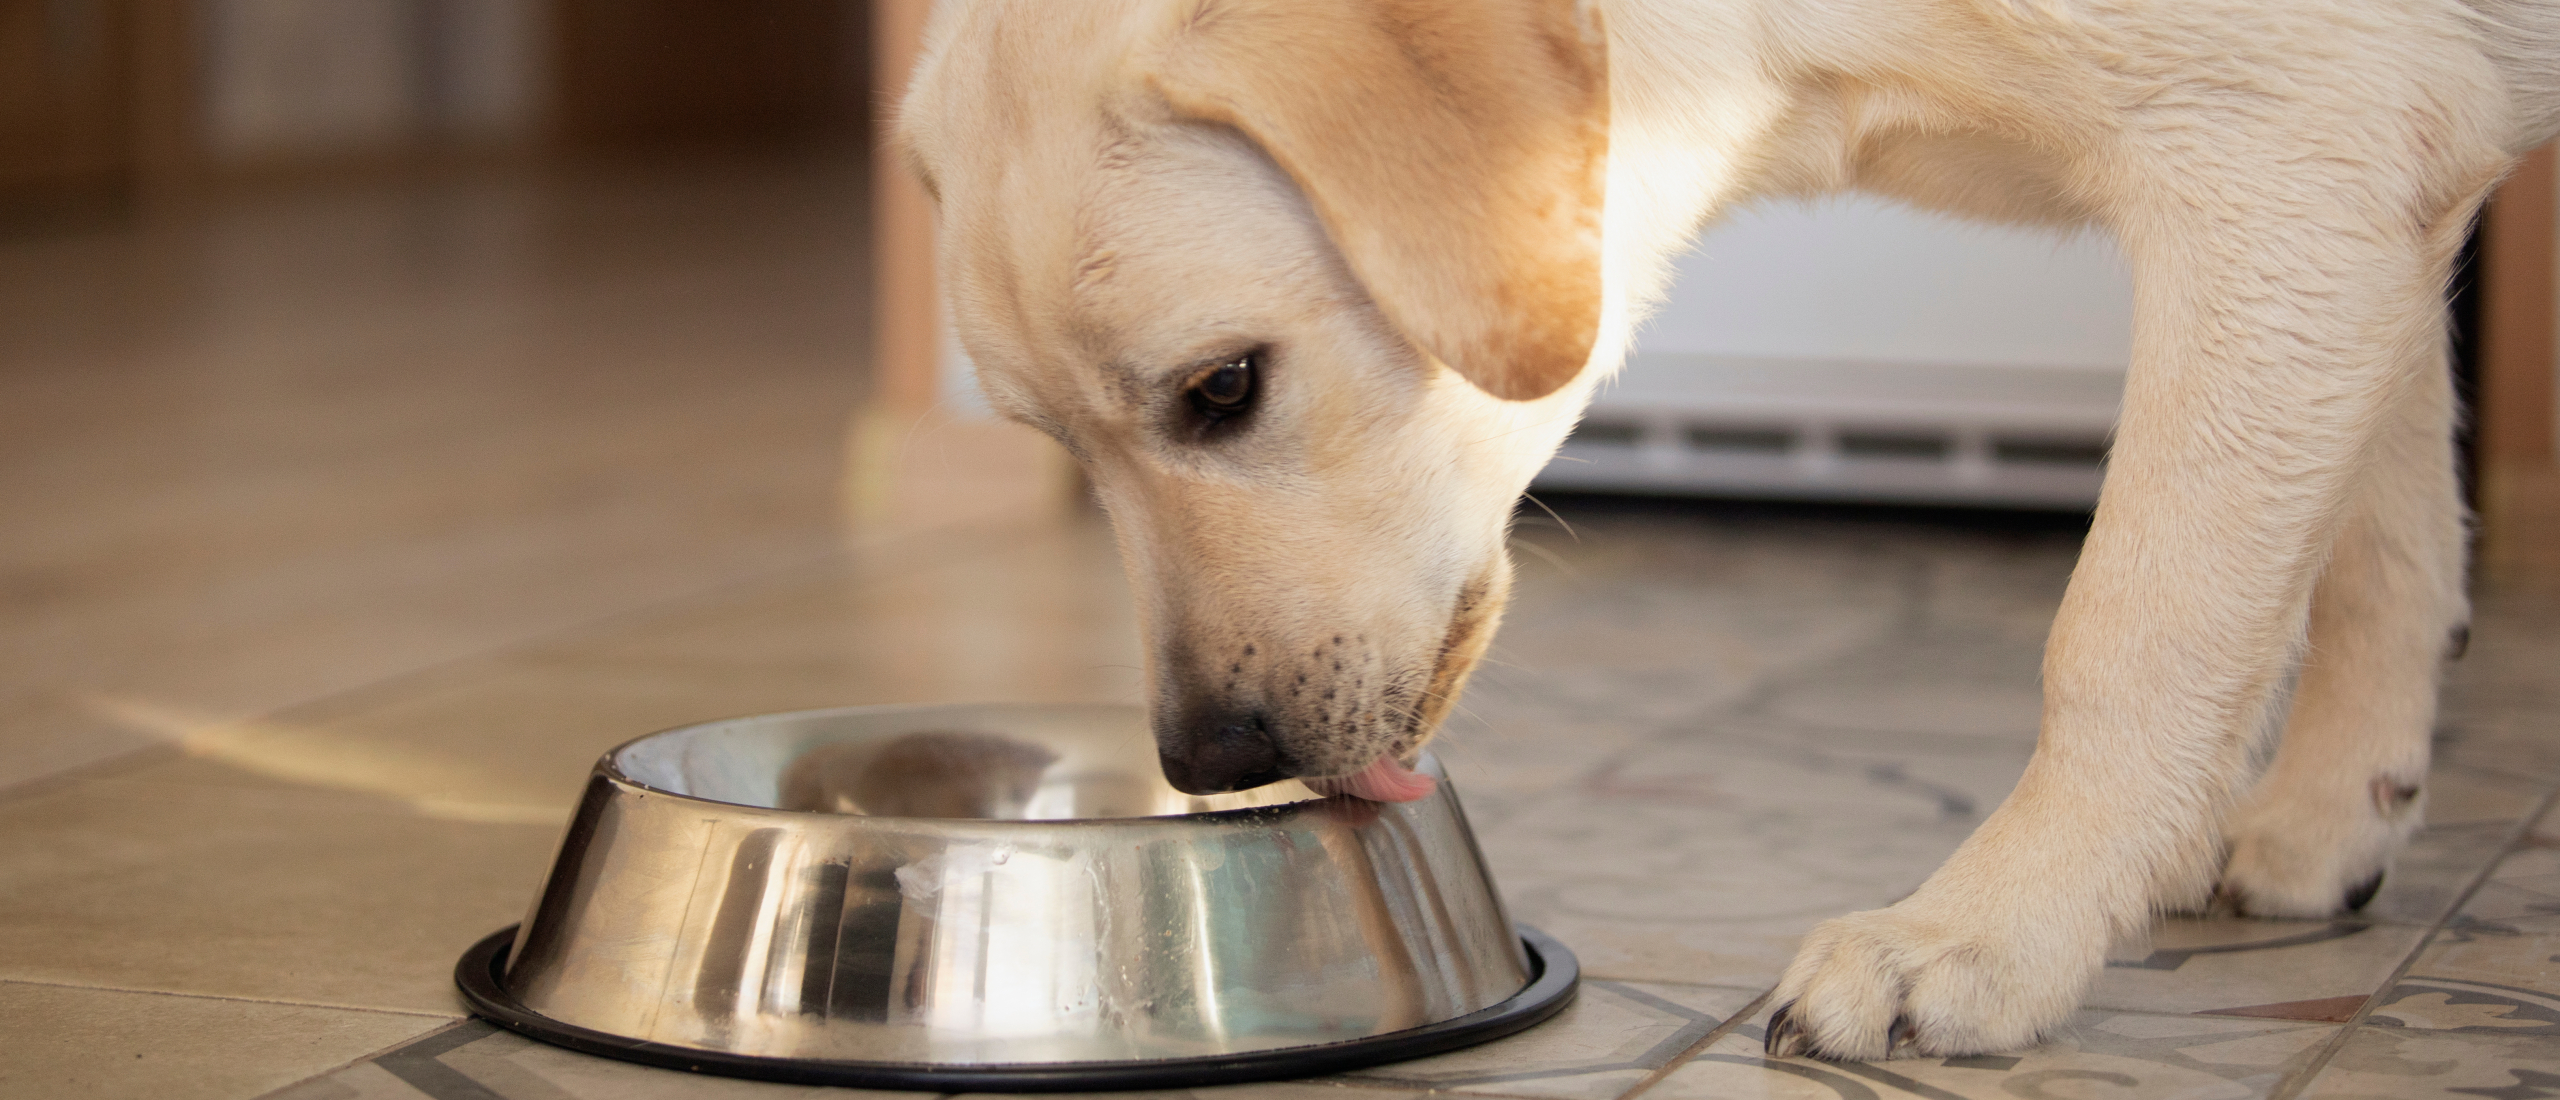 Voedselallergie bij honden - waardoor ontstaat het?